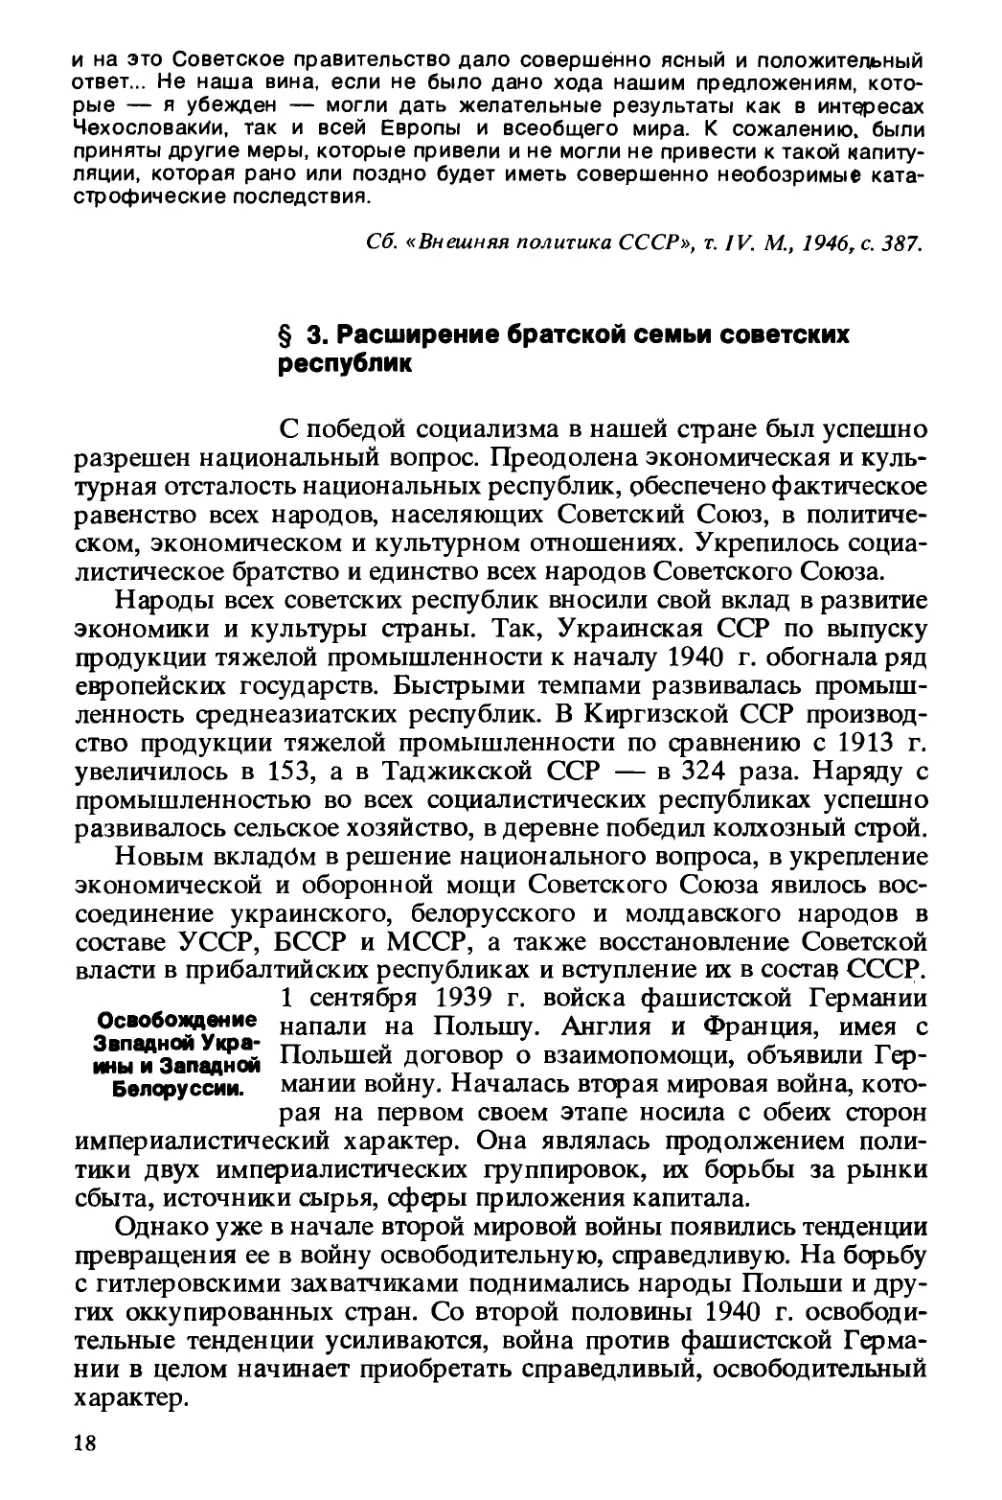 § 3. Расширение братской семьи советских республик